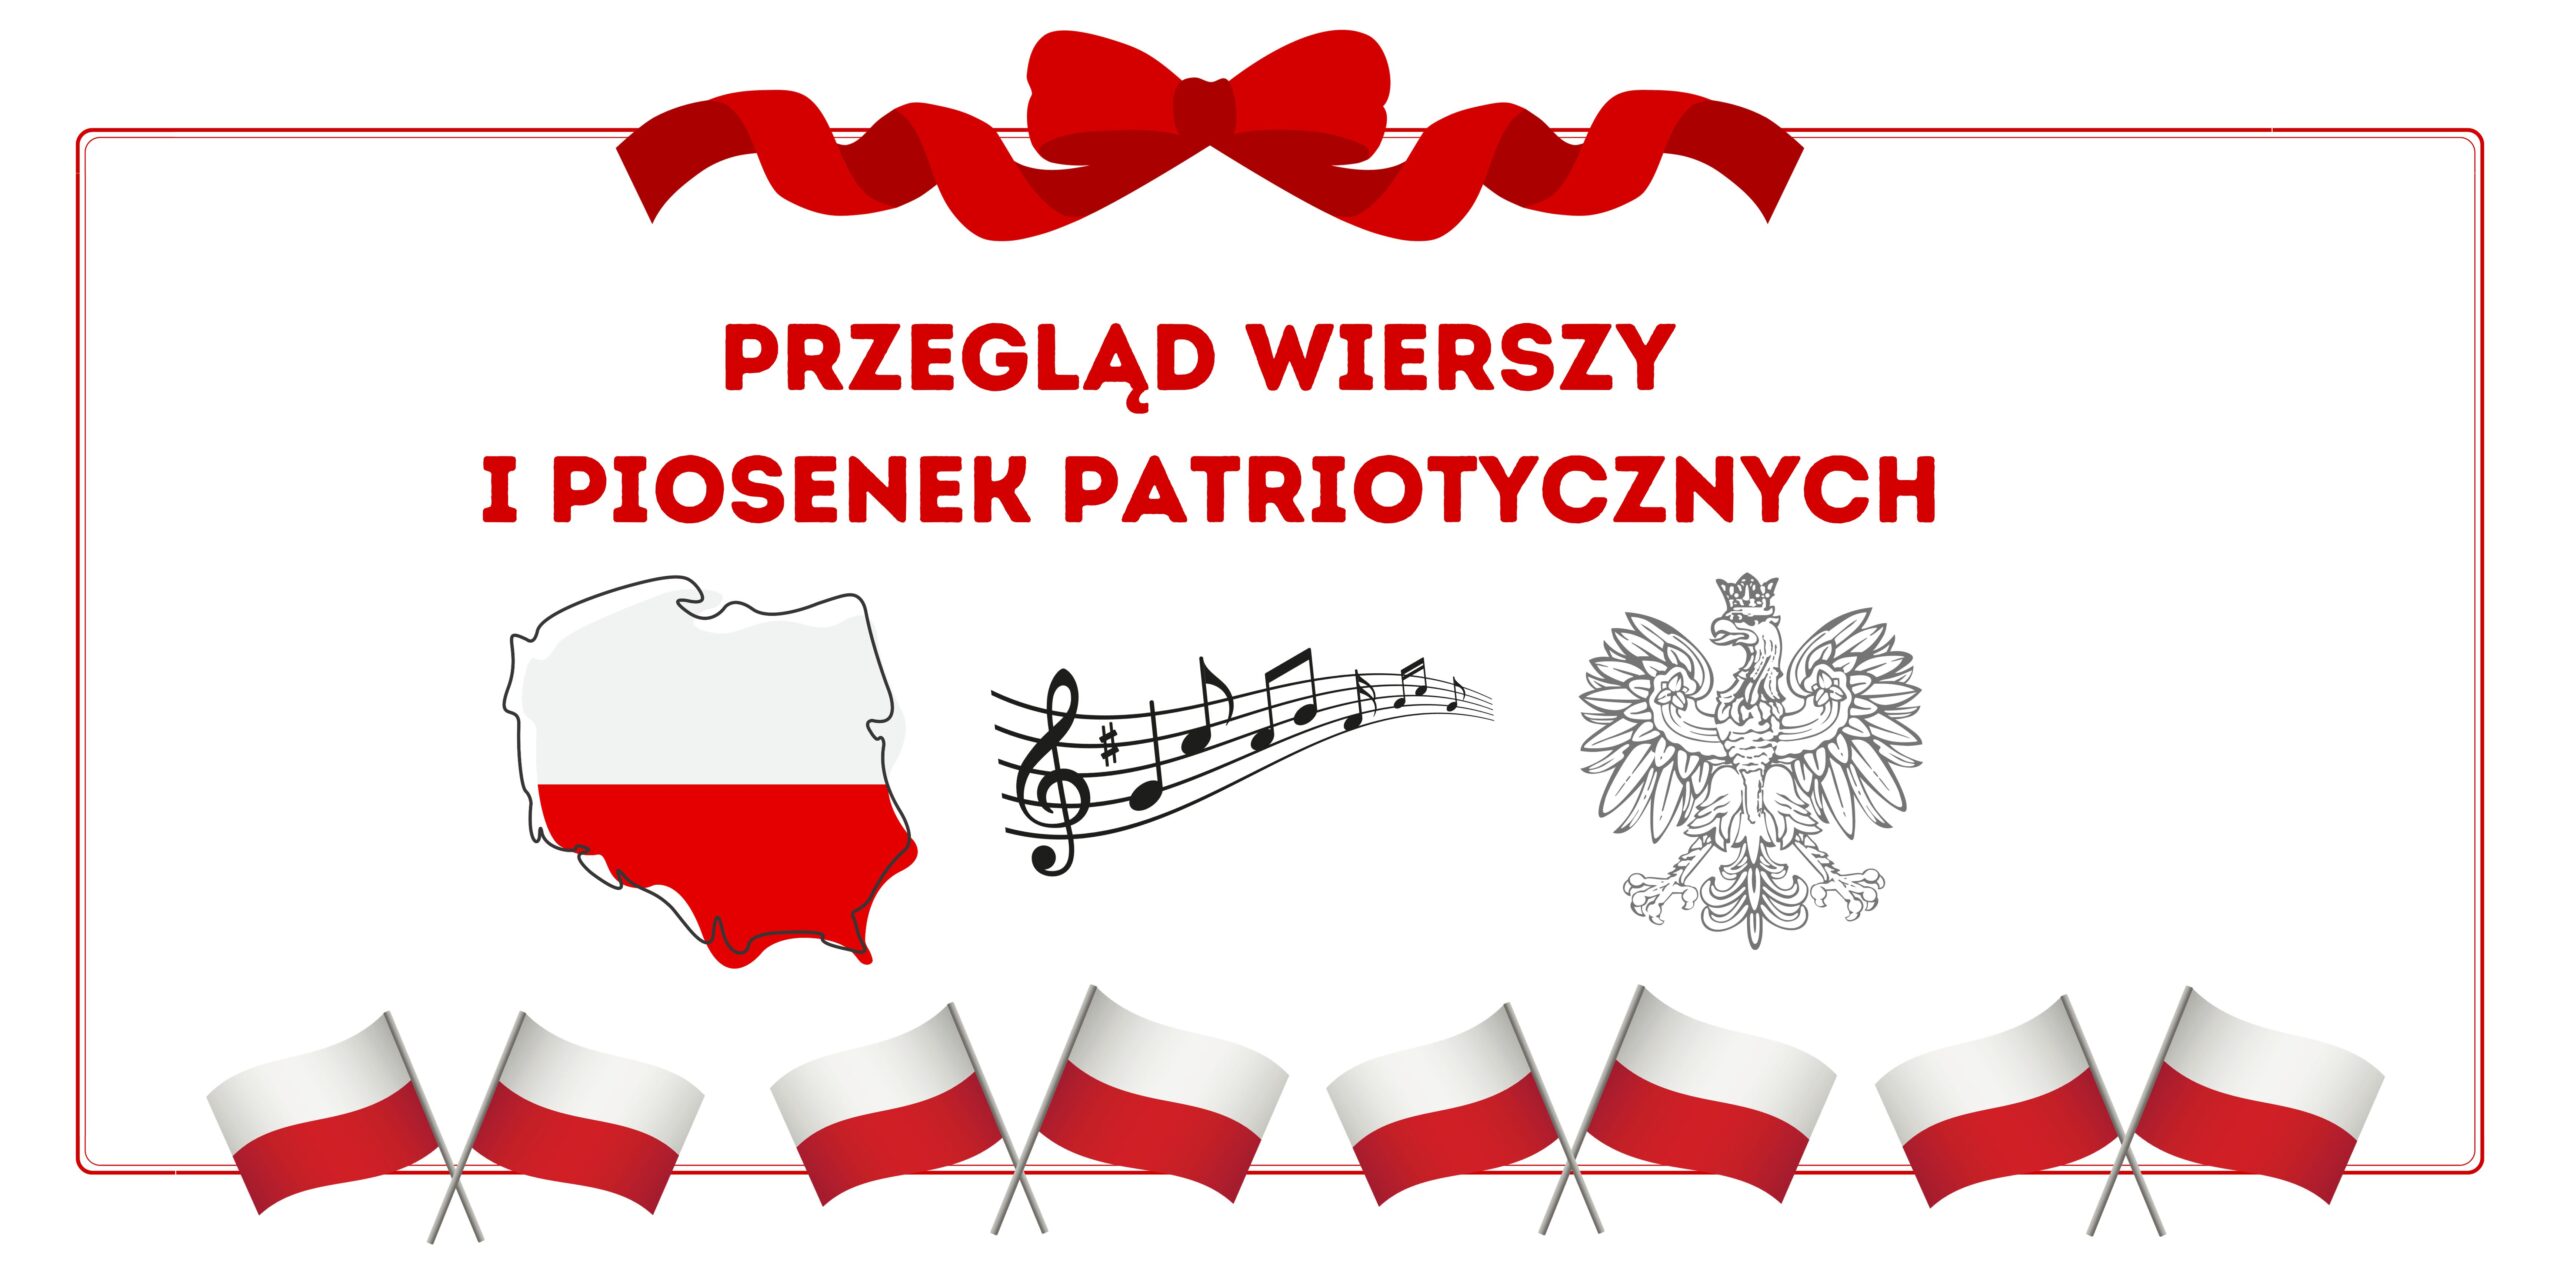 You are currently viewing Przegląd Wierszy i Piosenek o Polsce